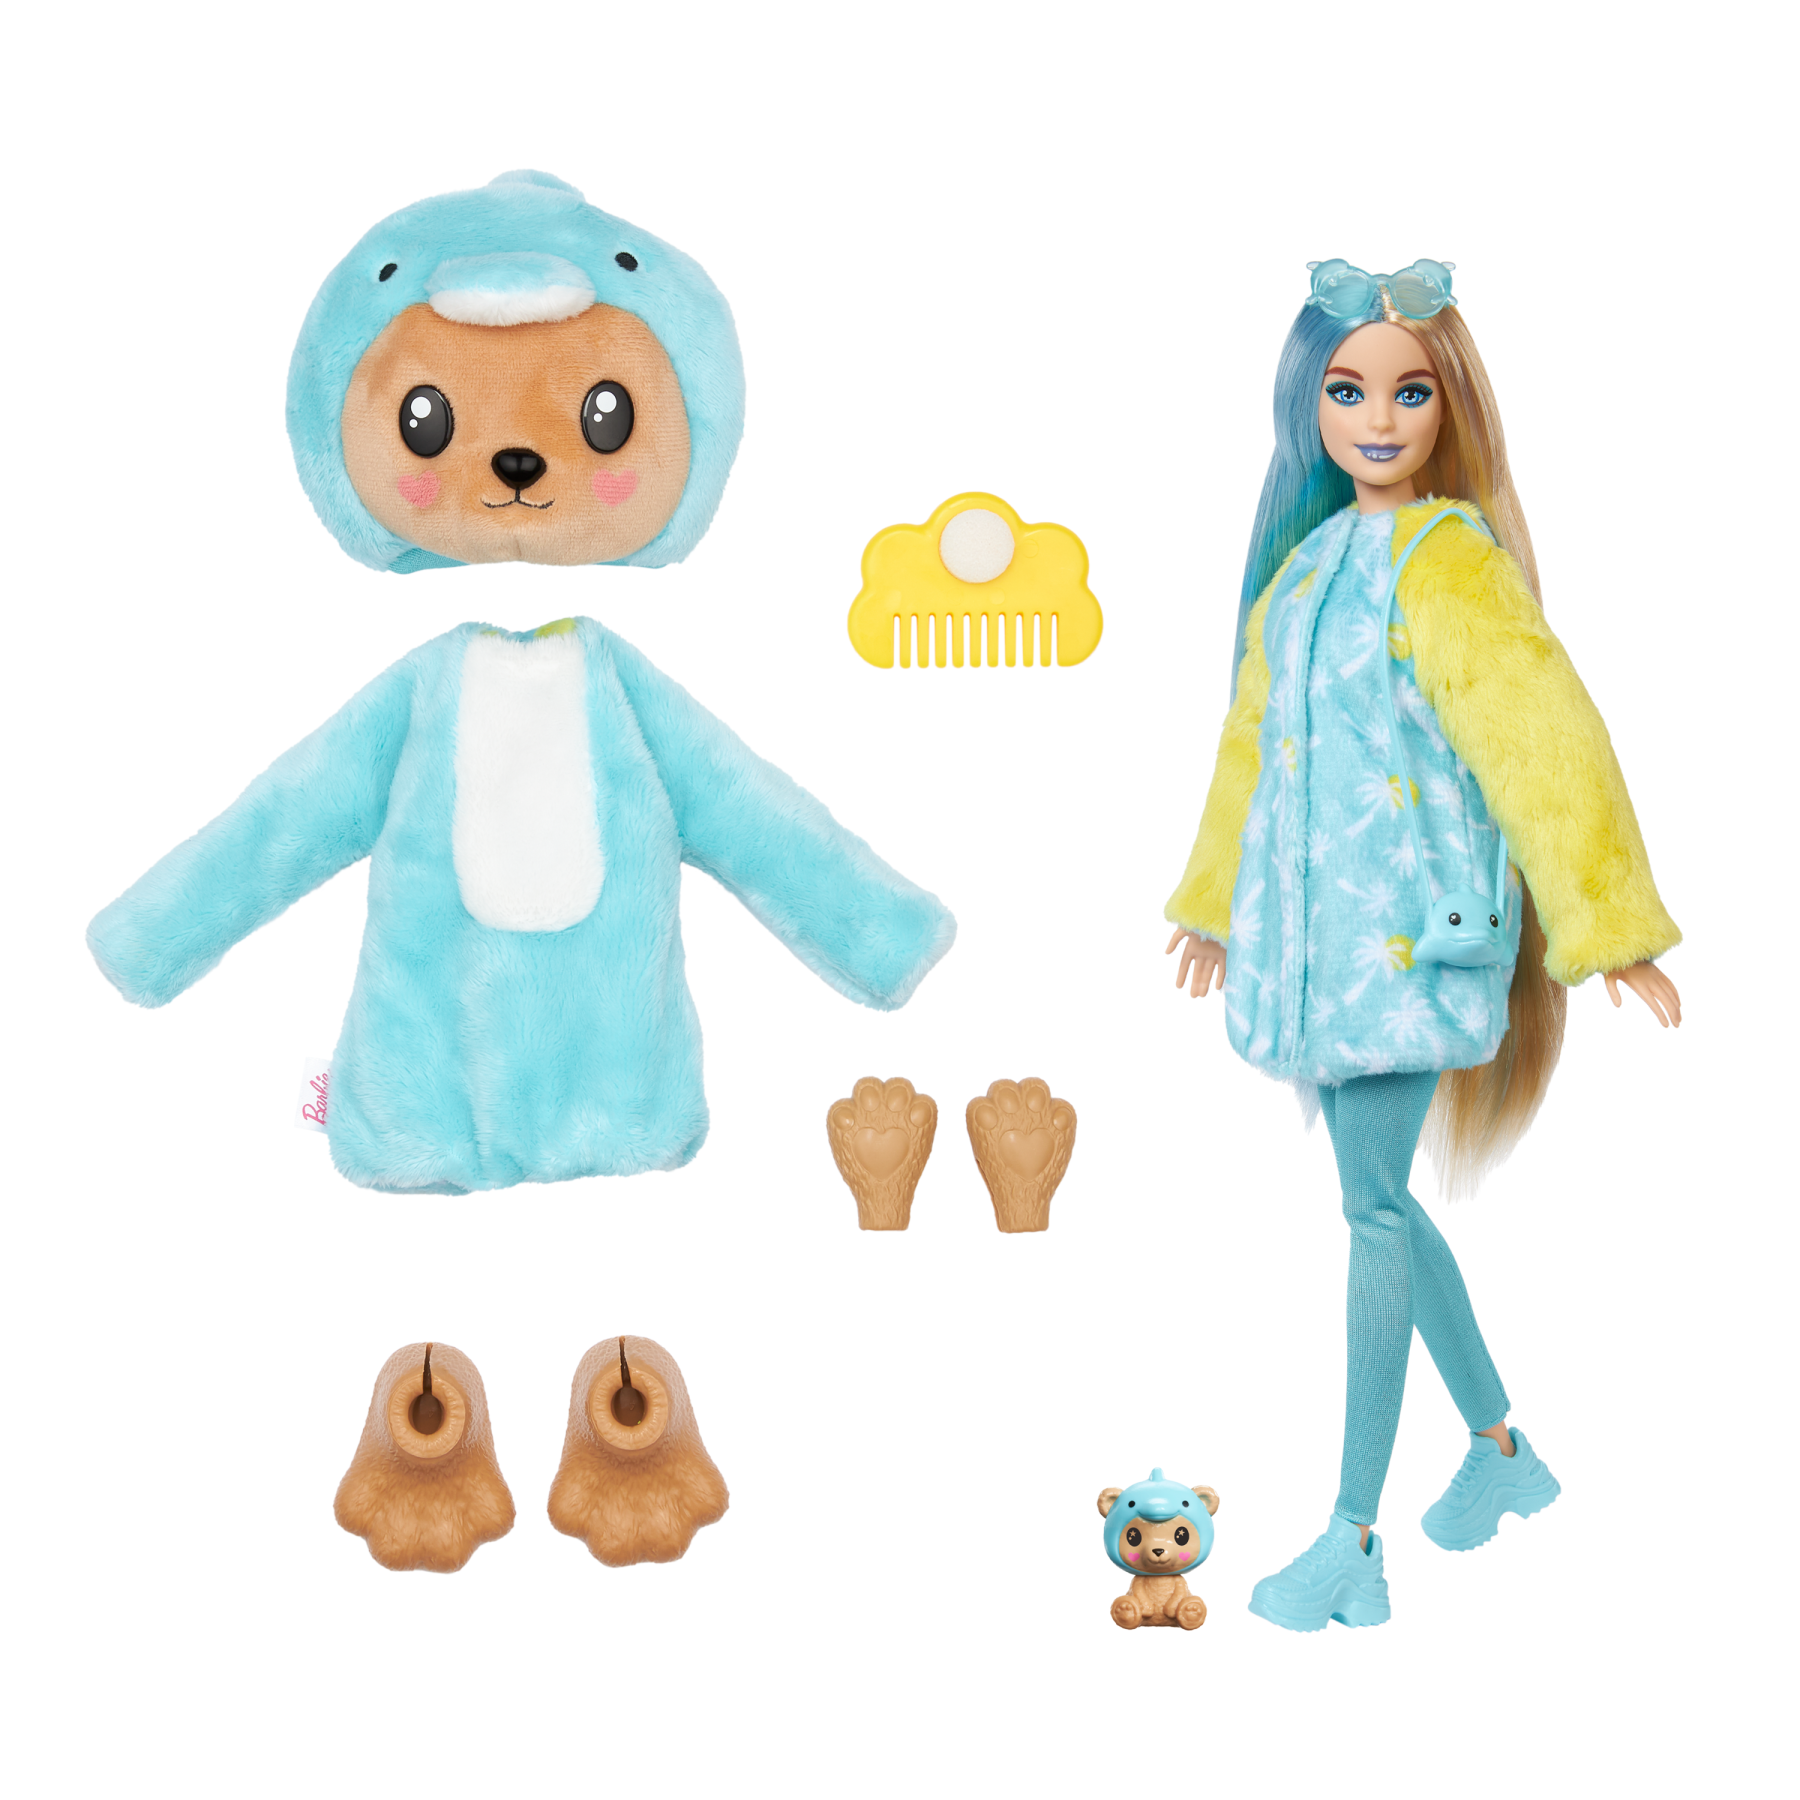 Barbie cutie reveal - bambola con costume di peluche da orsacchiotto-delfino e 10 accessori a sorpresa cambia colore, serie amici cuccioli - Barbie